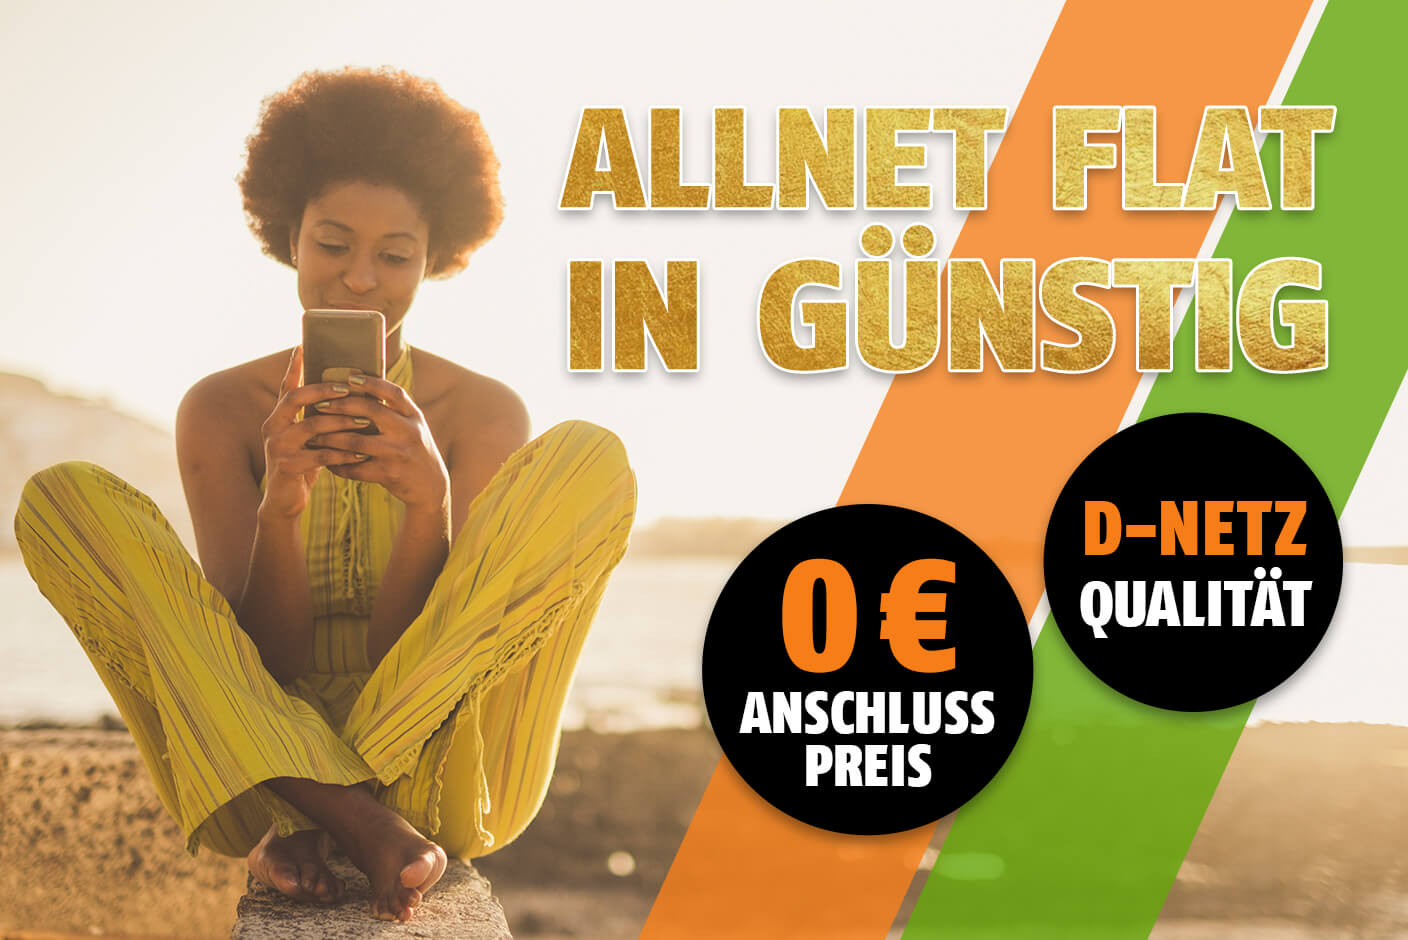 Allnet Flat in günstig mit 0€ Anschlusspreis und D-Netz Qualität